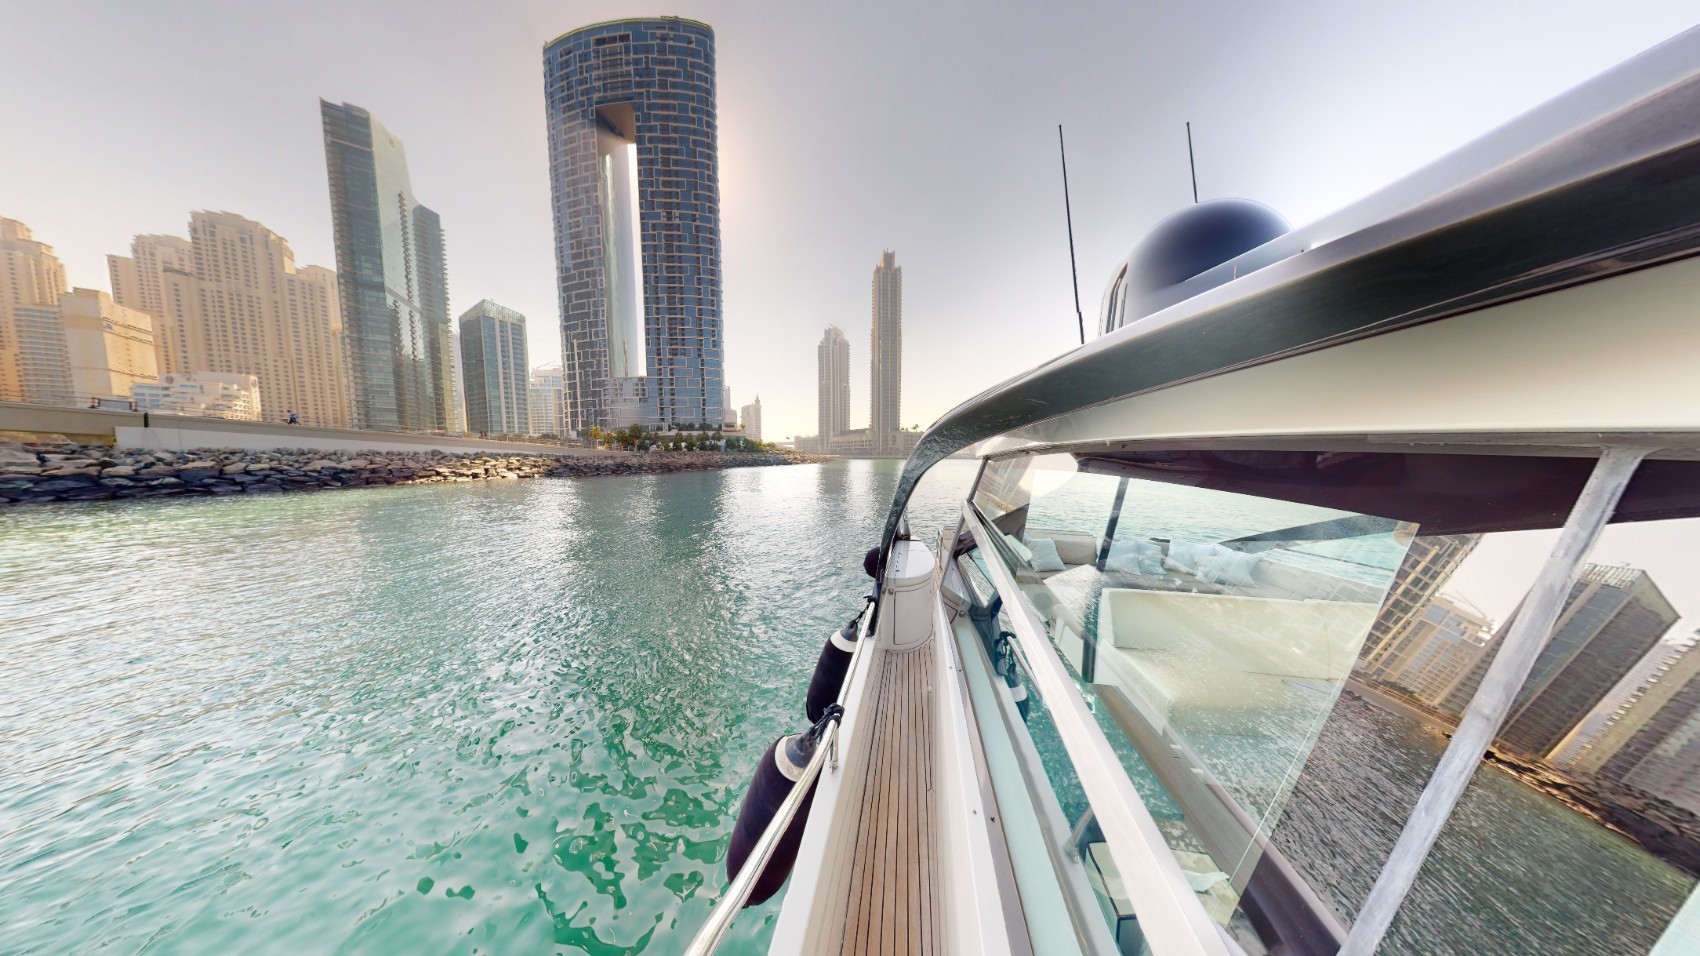 Pershing 5X Pearl White 52 pied à Dubai Harbour à louer à Dubai